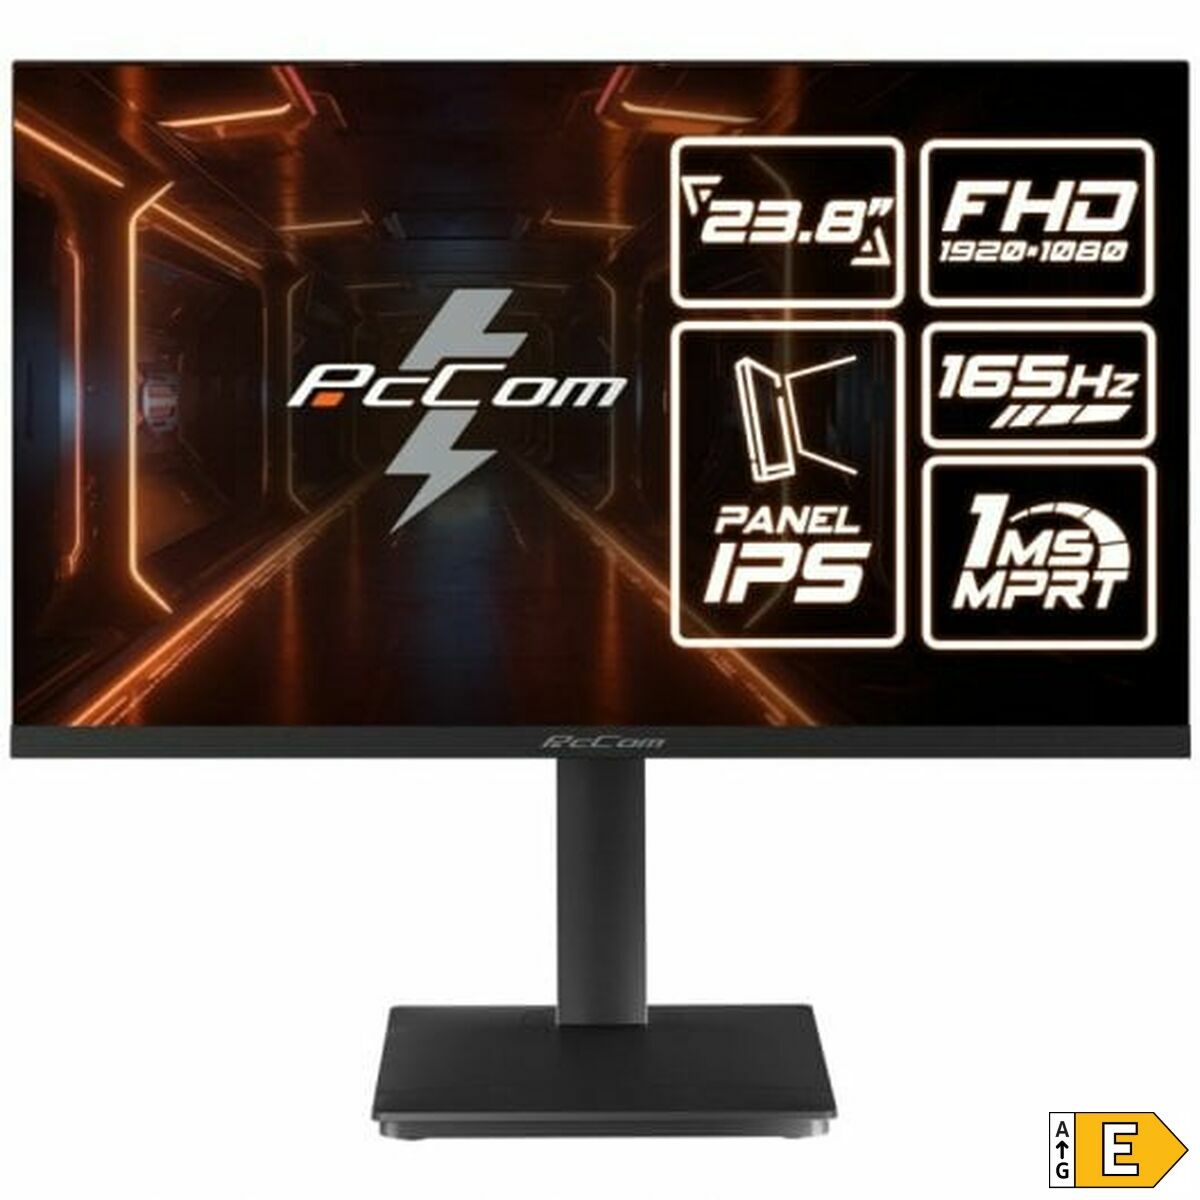 Écran PcCom Elysium Pro GO2480F-S3 Full HD 23,8" 165 Hz